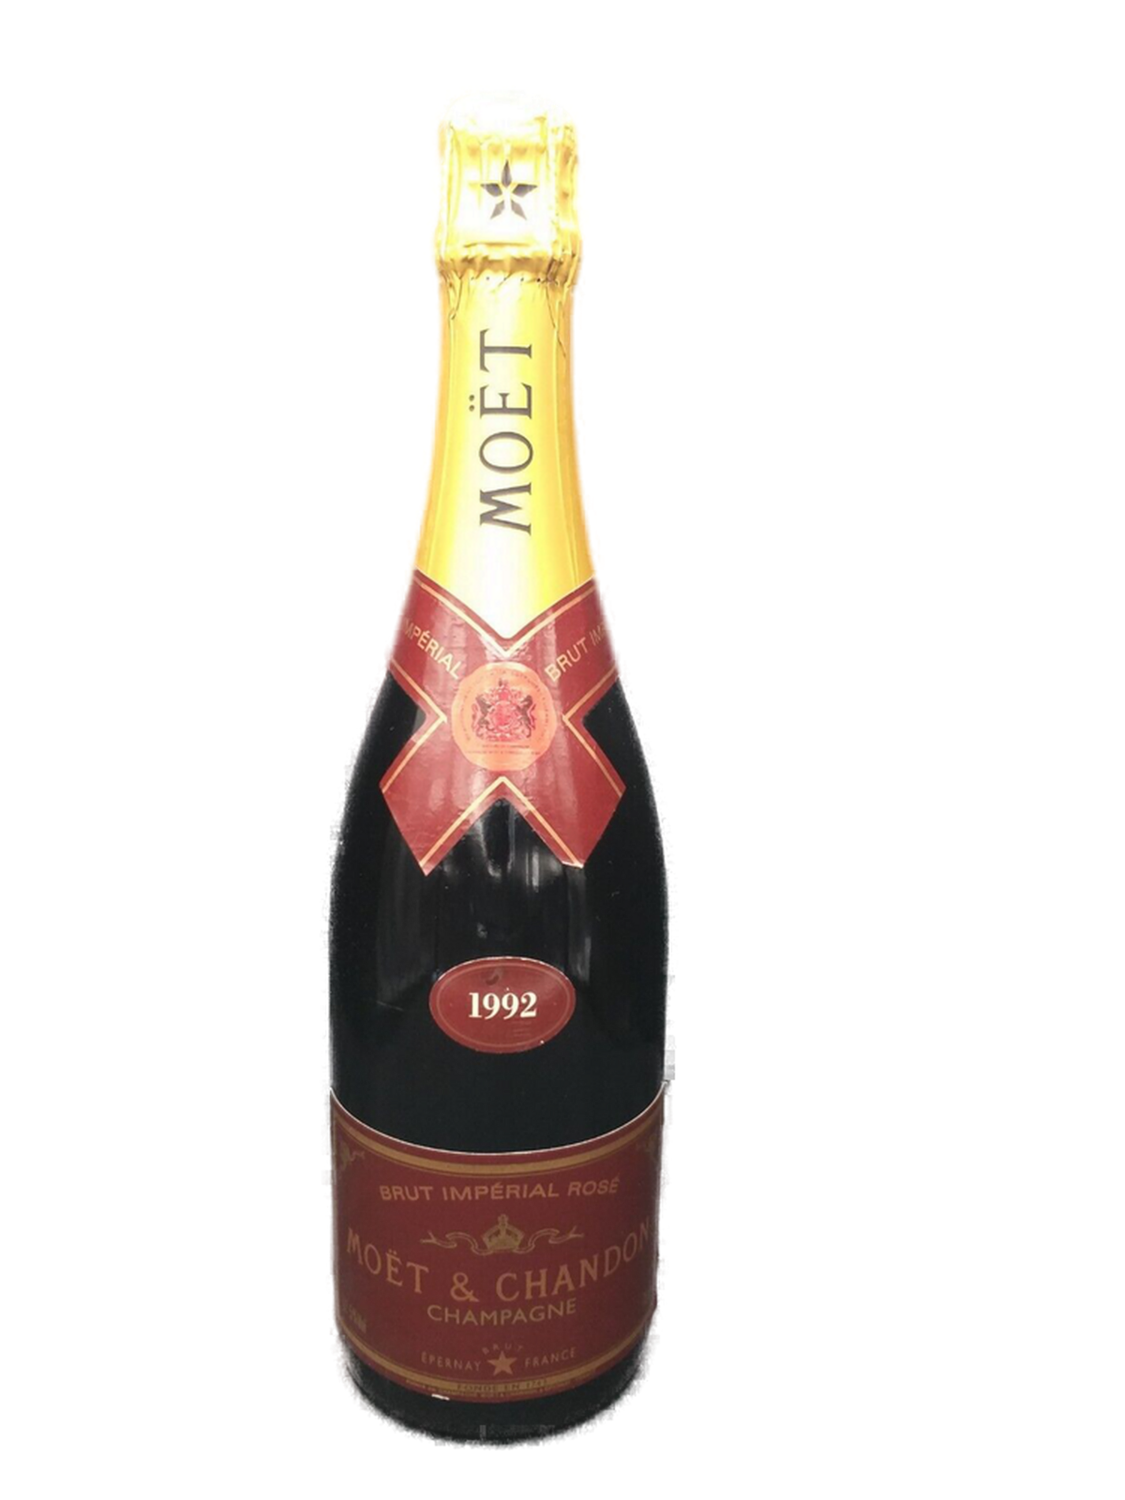 Moet & Chandon Brut Imperial Rose 1992 Champagner 12,5% VOL. (1x0,75ltr.)